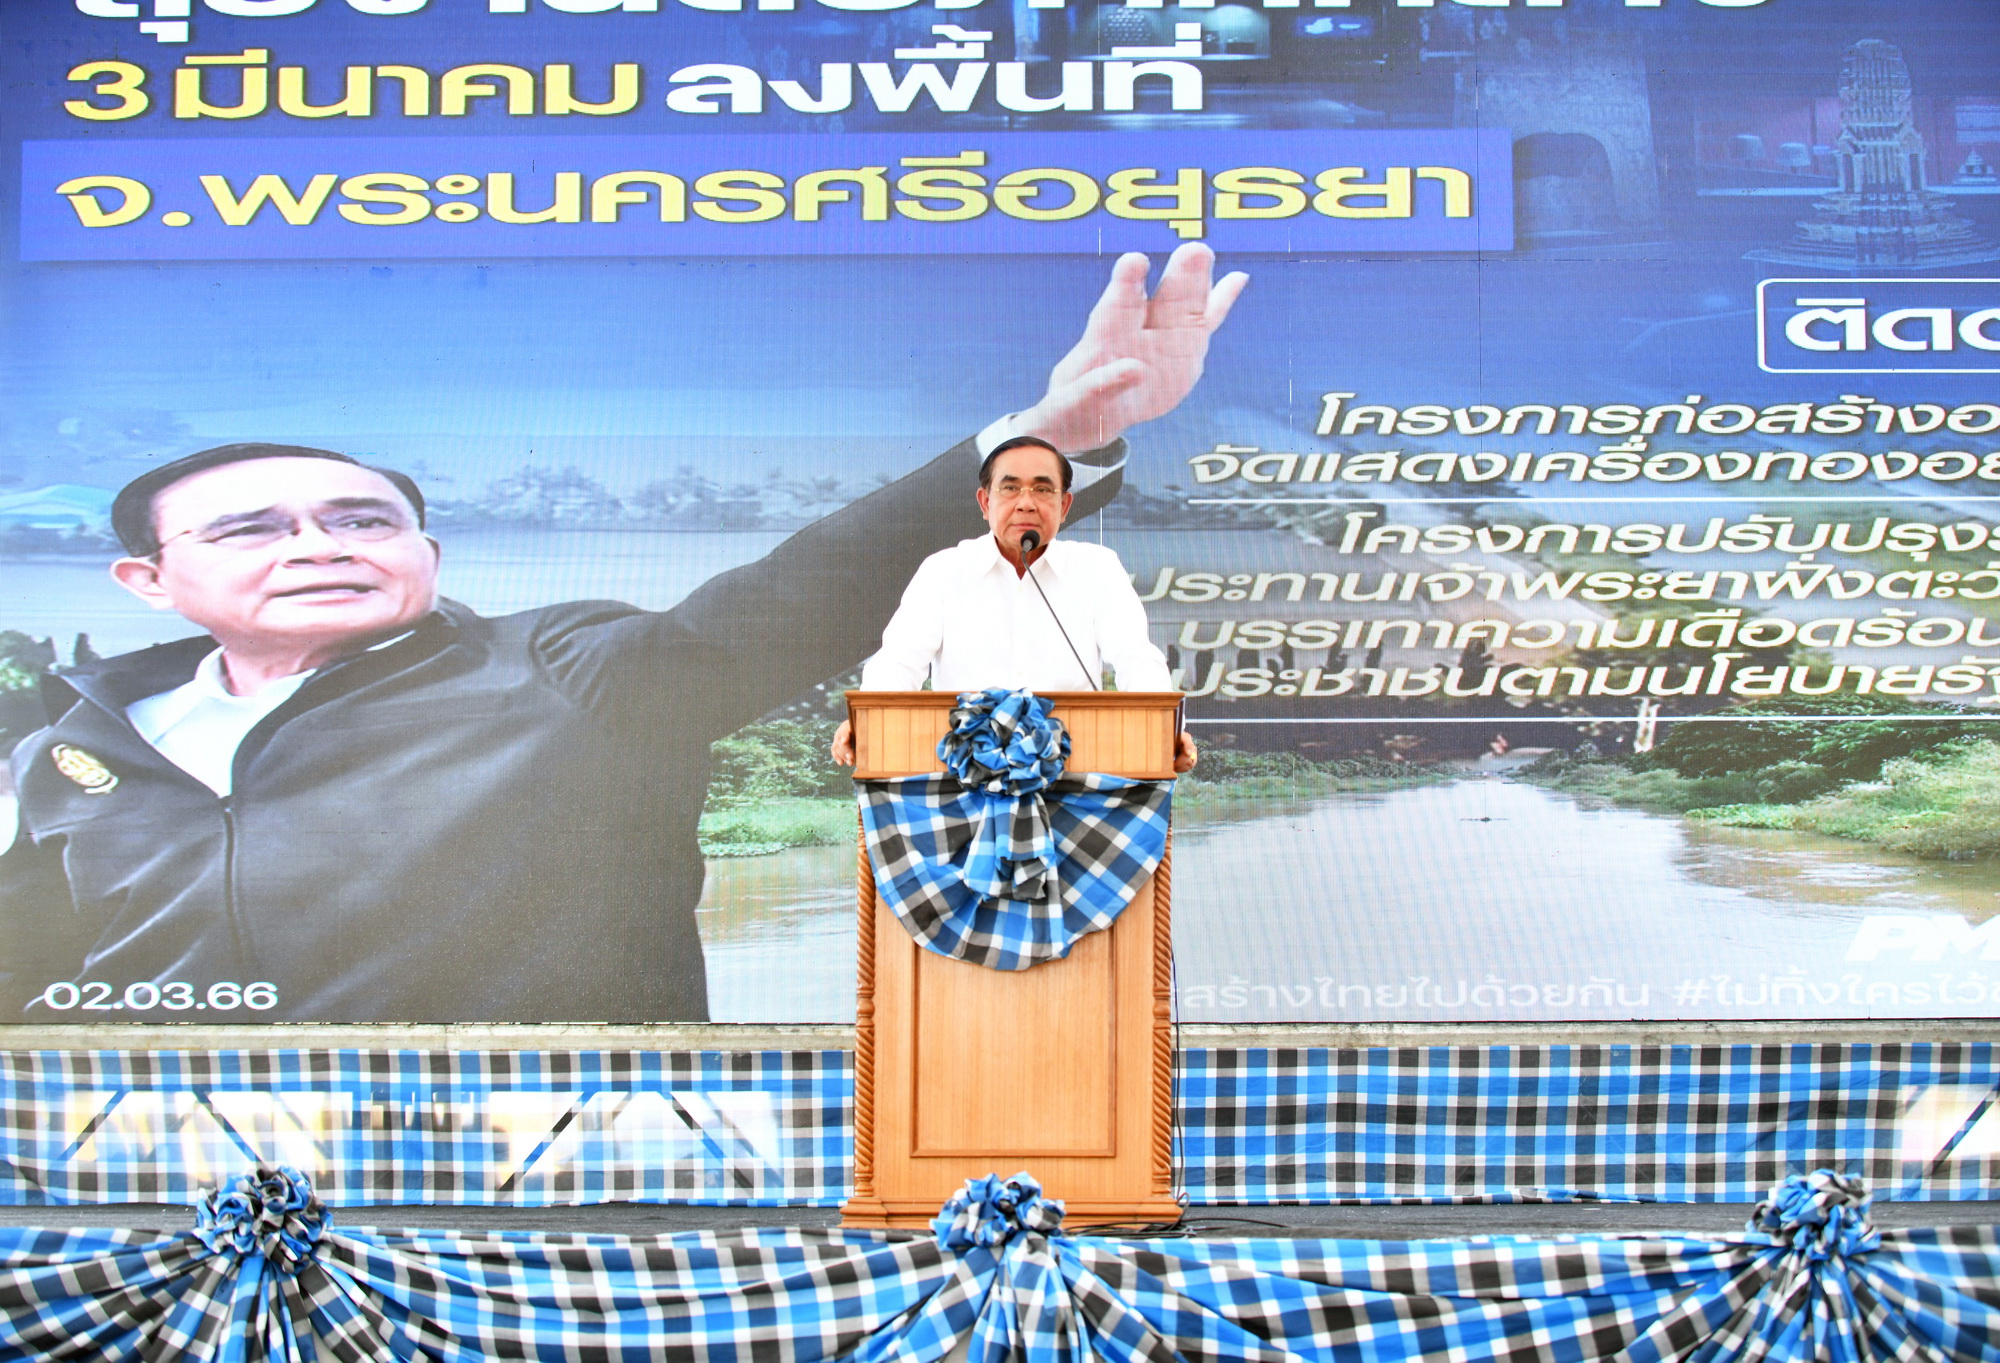 ​นายกฯ ตรวจติดตามโครงการปรับปรุงระบบชลประทานเจ้าพระยาฝั่งตะวันตก ตั้งเป้าระบายน้ำแนวเหนือ-ใต้สู่อ่าวไทย บริหารจัดการน้ำอย่างเป็นระบบ ยืนยันรัฐบาลมุ่งขับเคลื่อนประเทศทุกมิติ